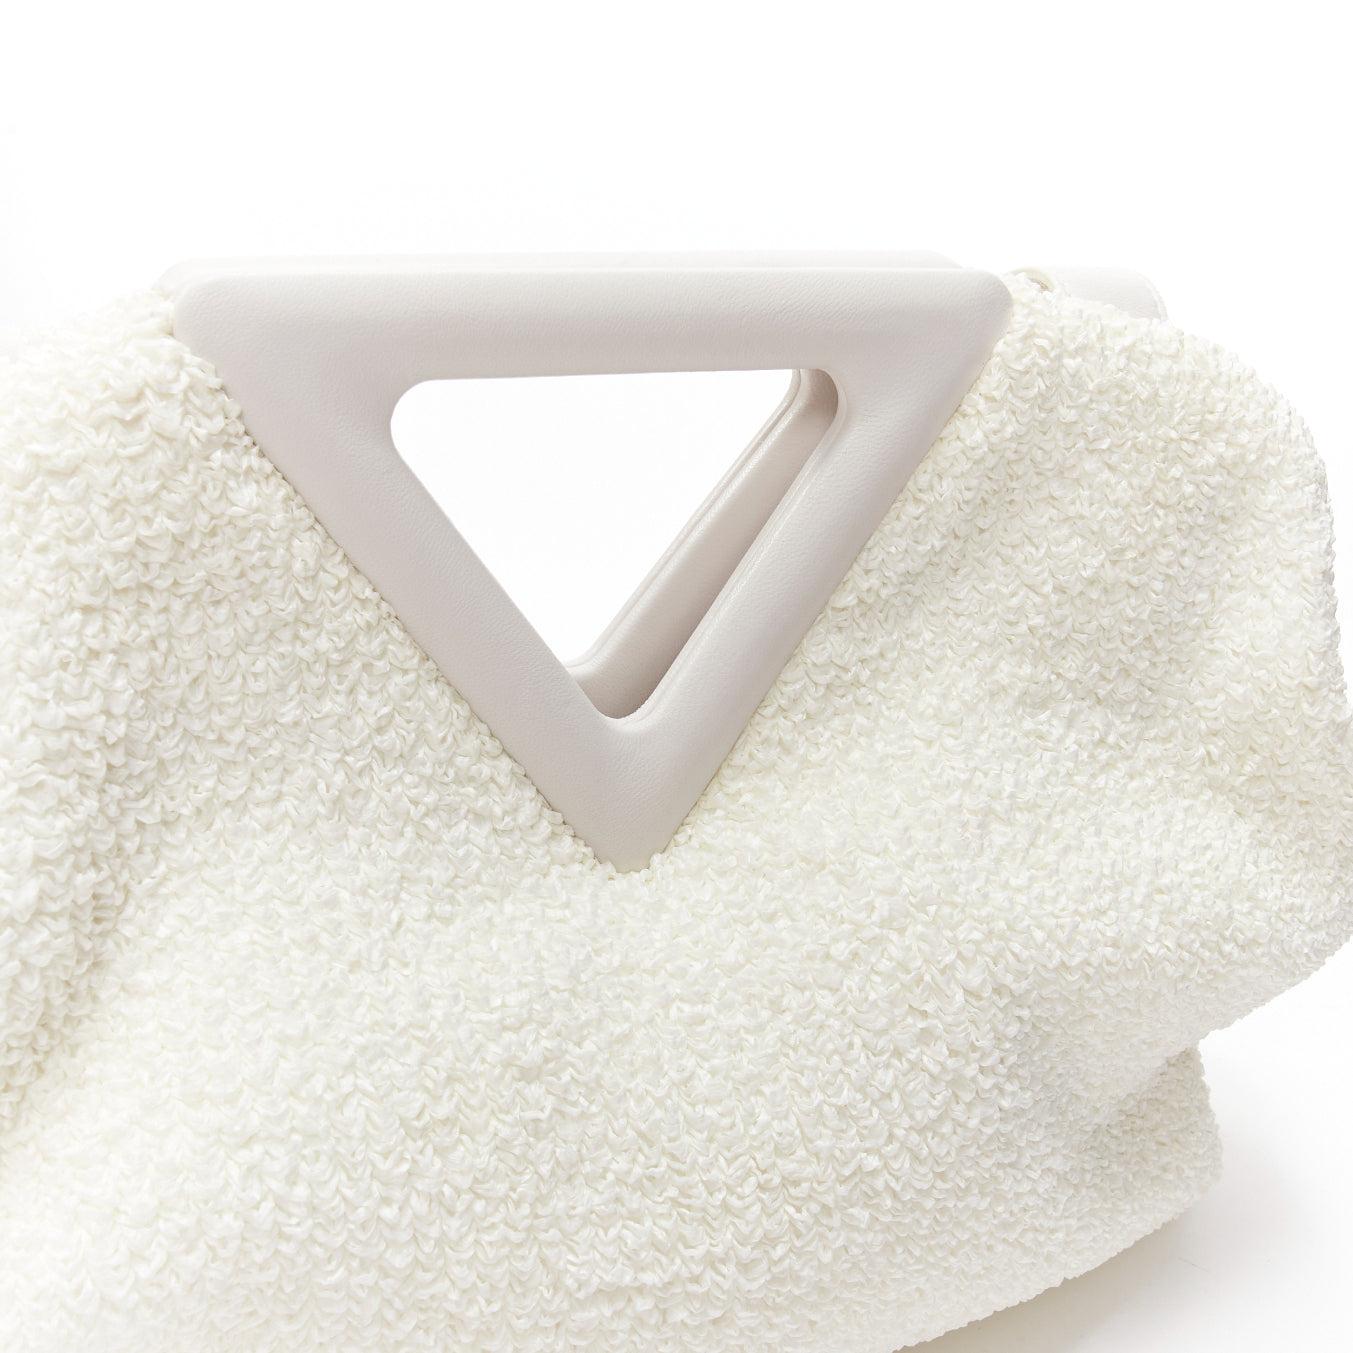 BOTTEGA VENETA Point Triangle white sponge boucle curly raffia leather bag For Sale 2